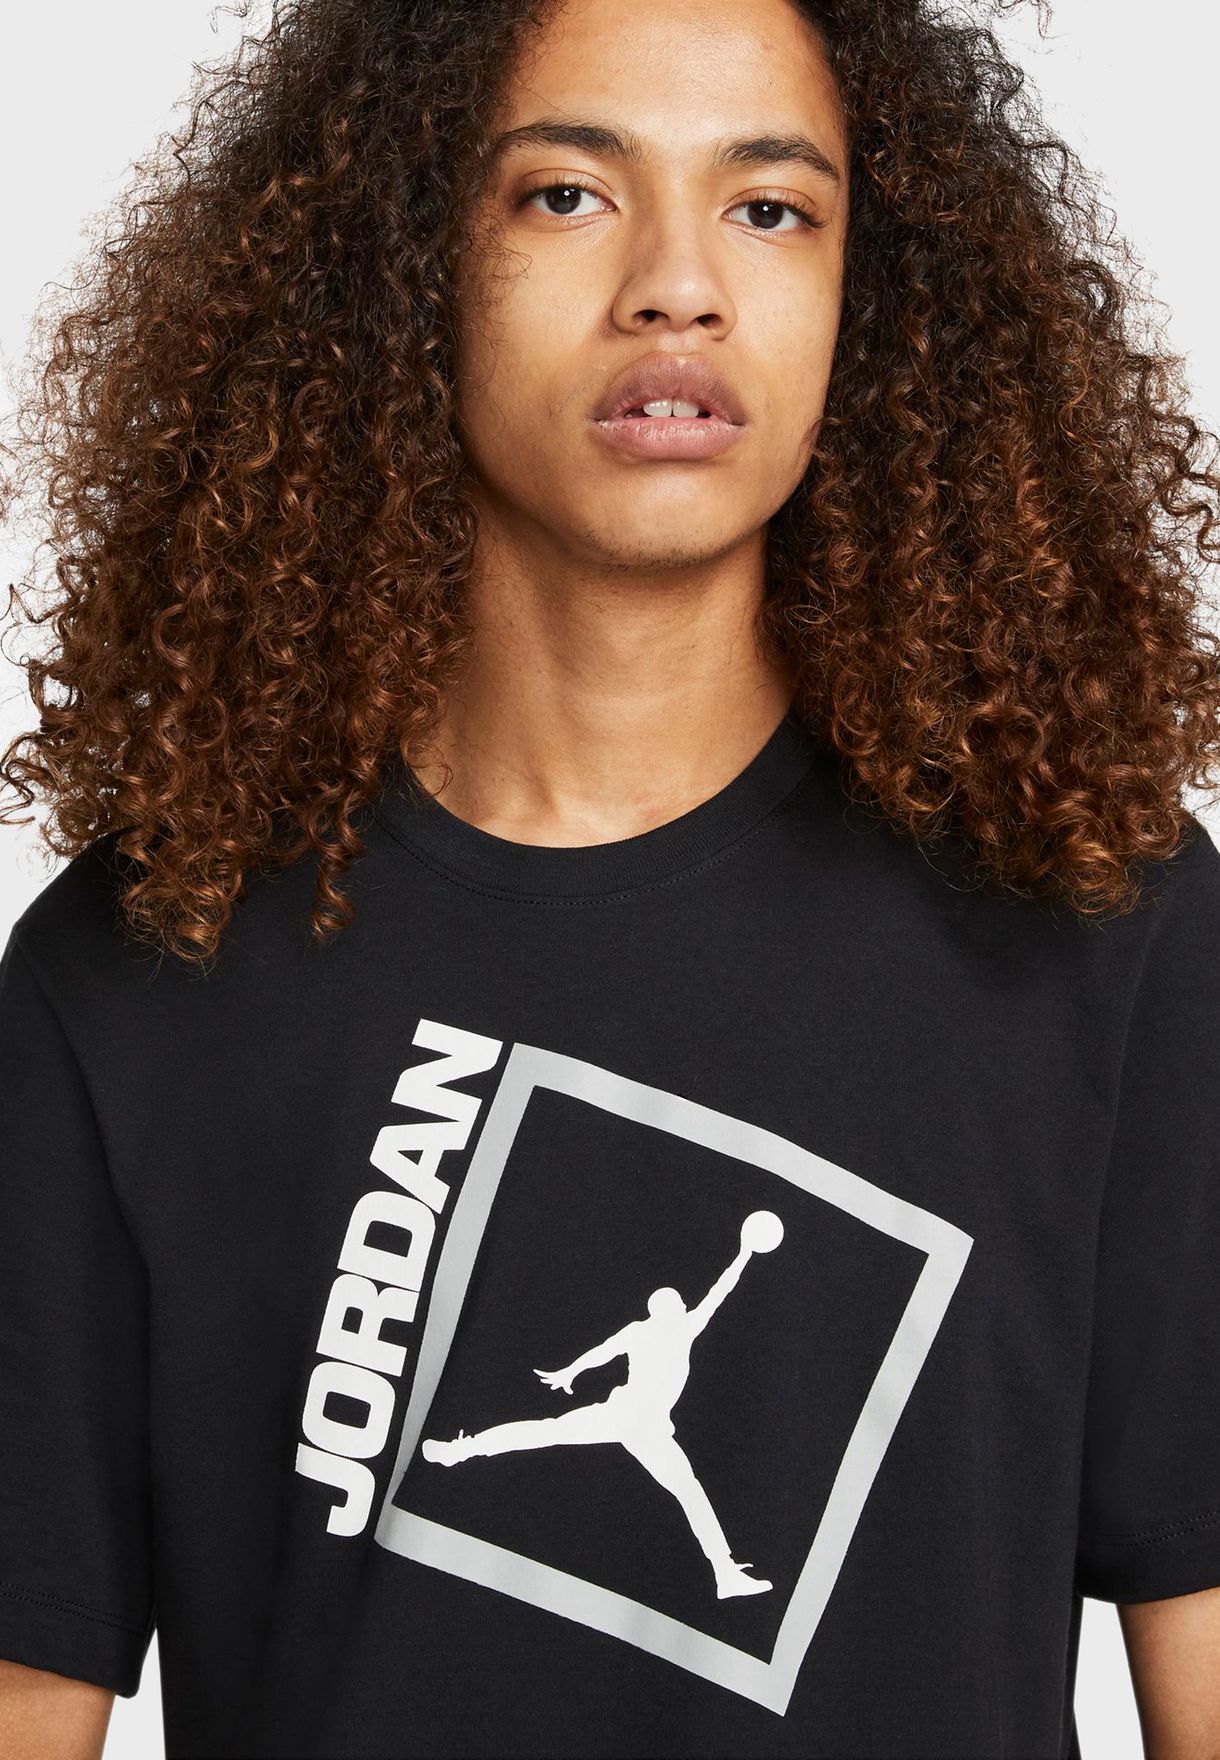 Jordan Jumpman Box T-Shirt